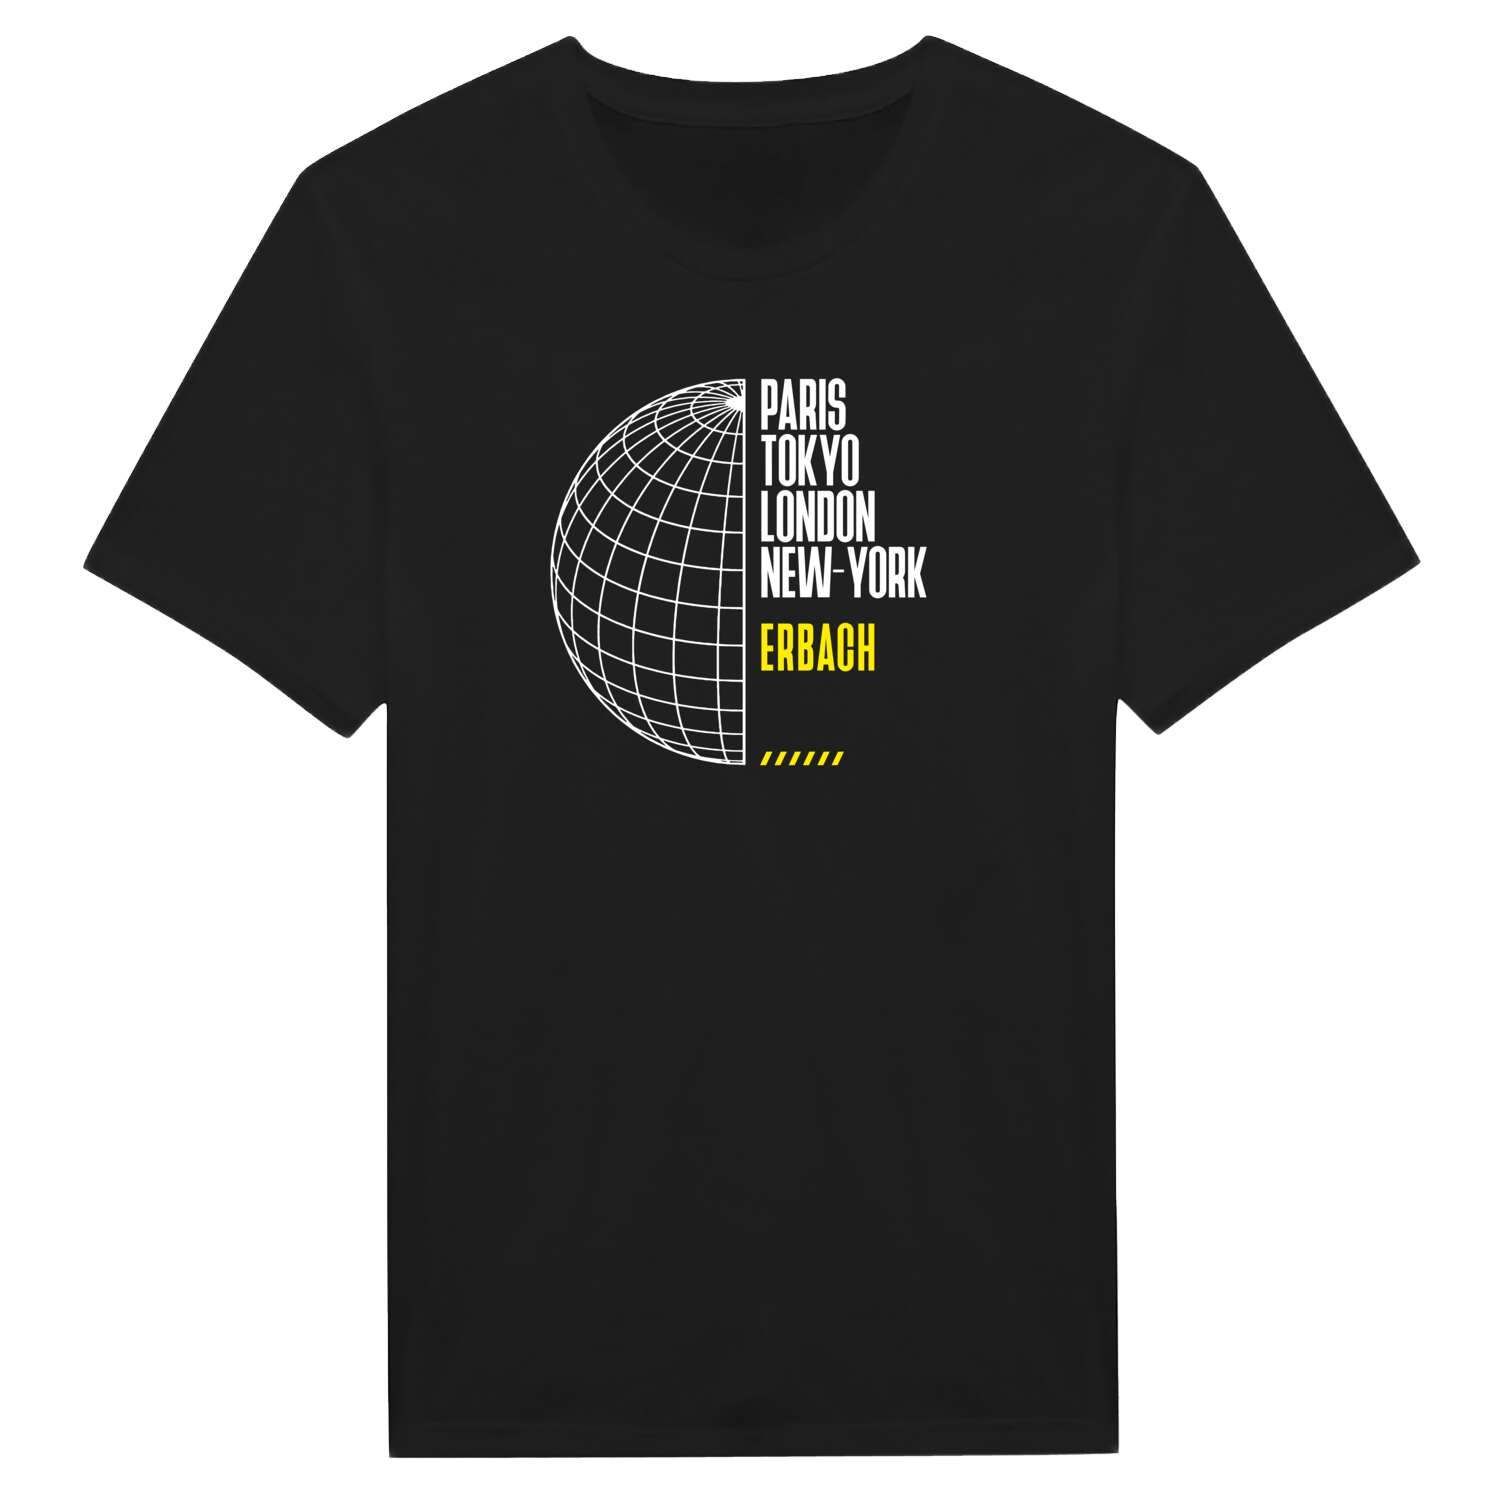 Erbach T-Shirt »Paris Tokyo London«